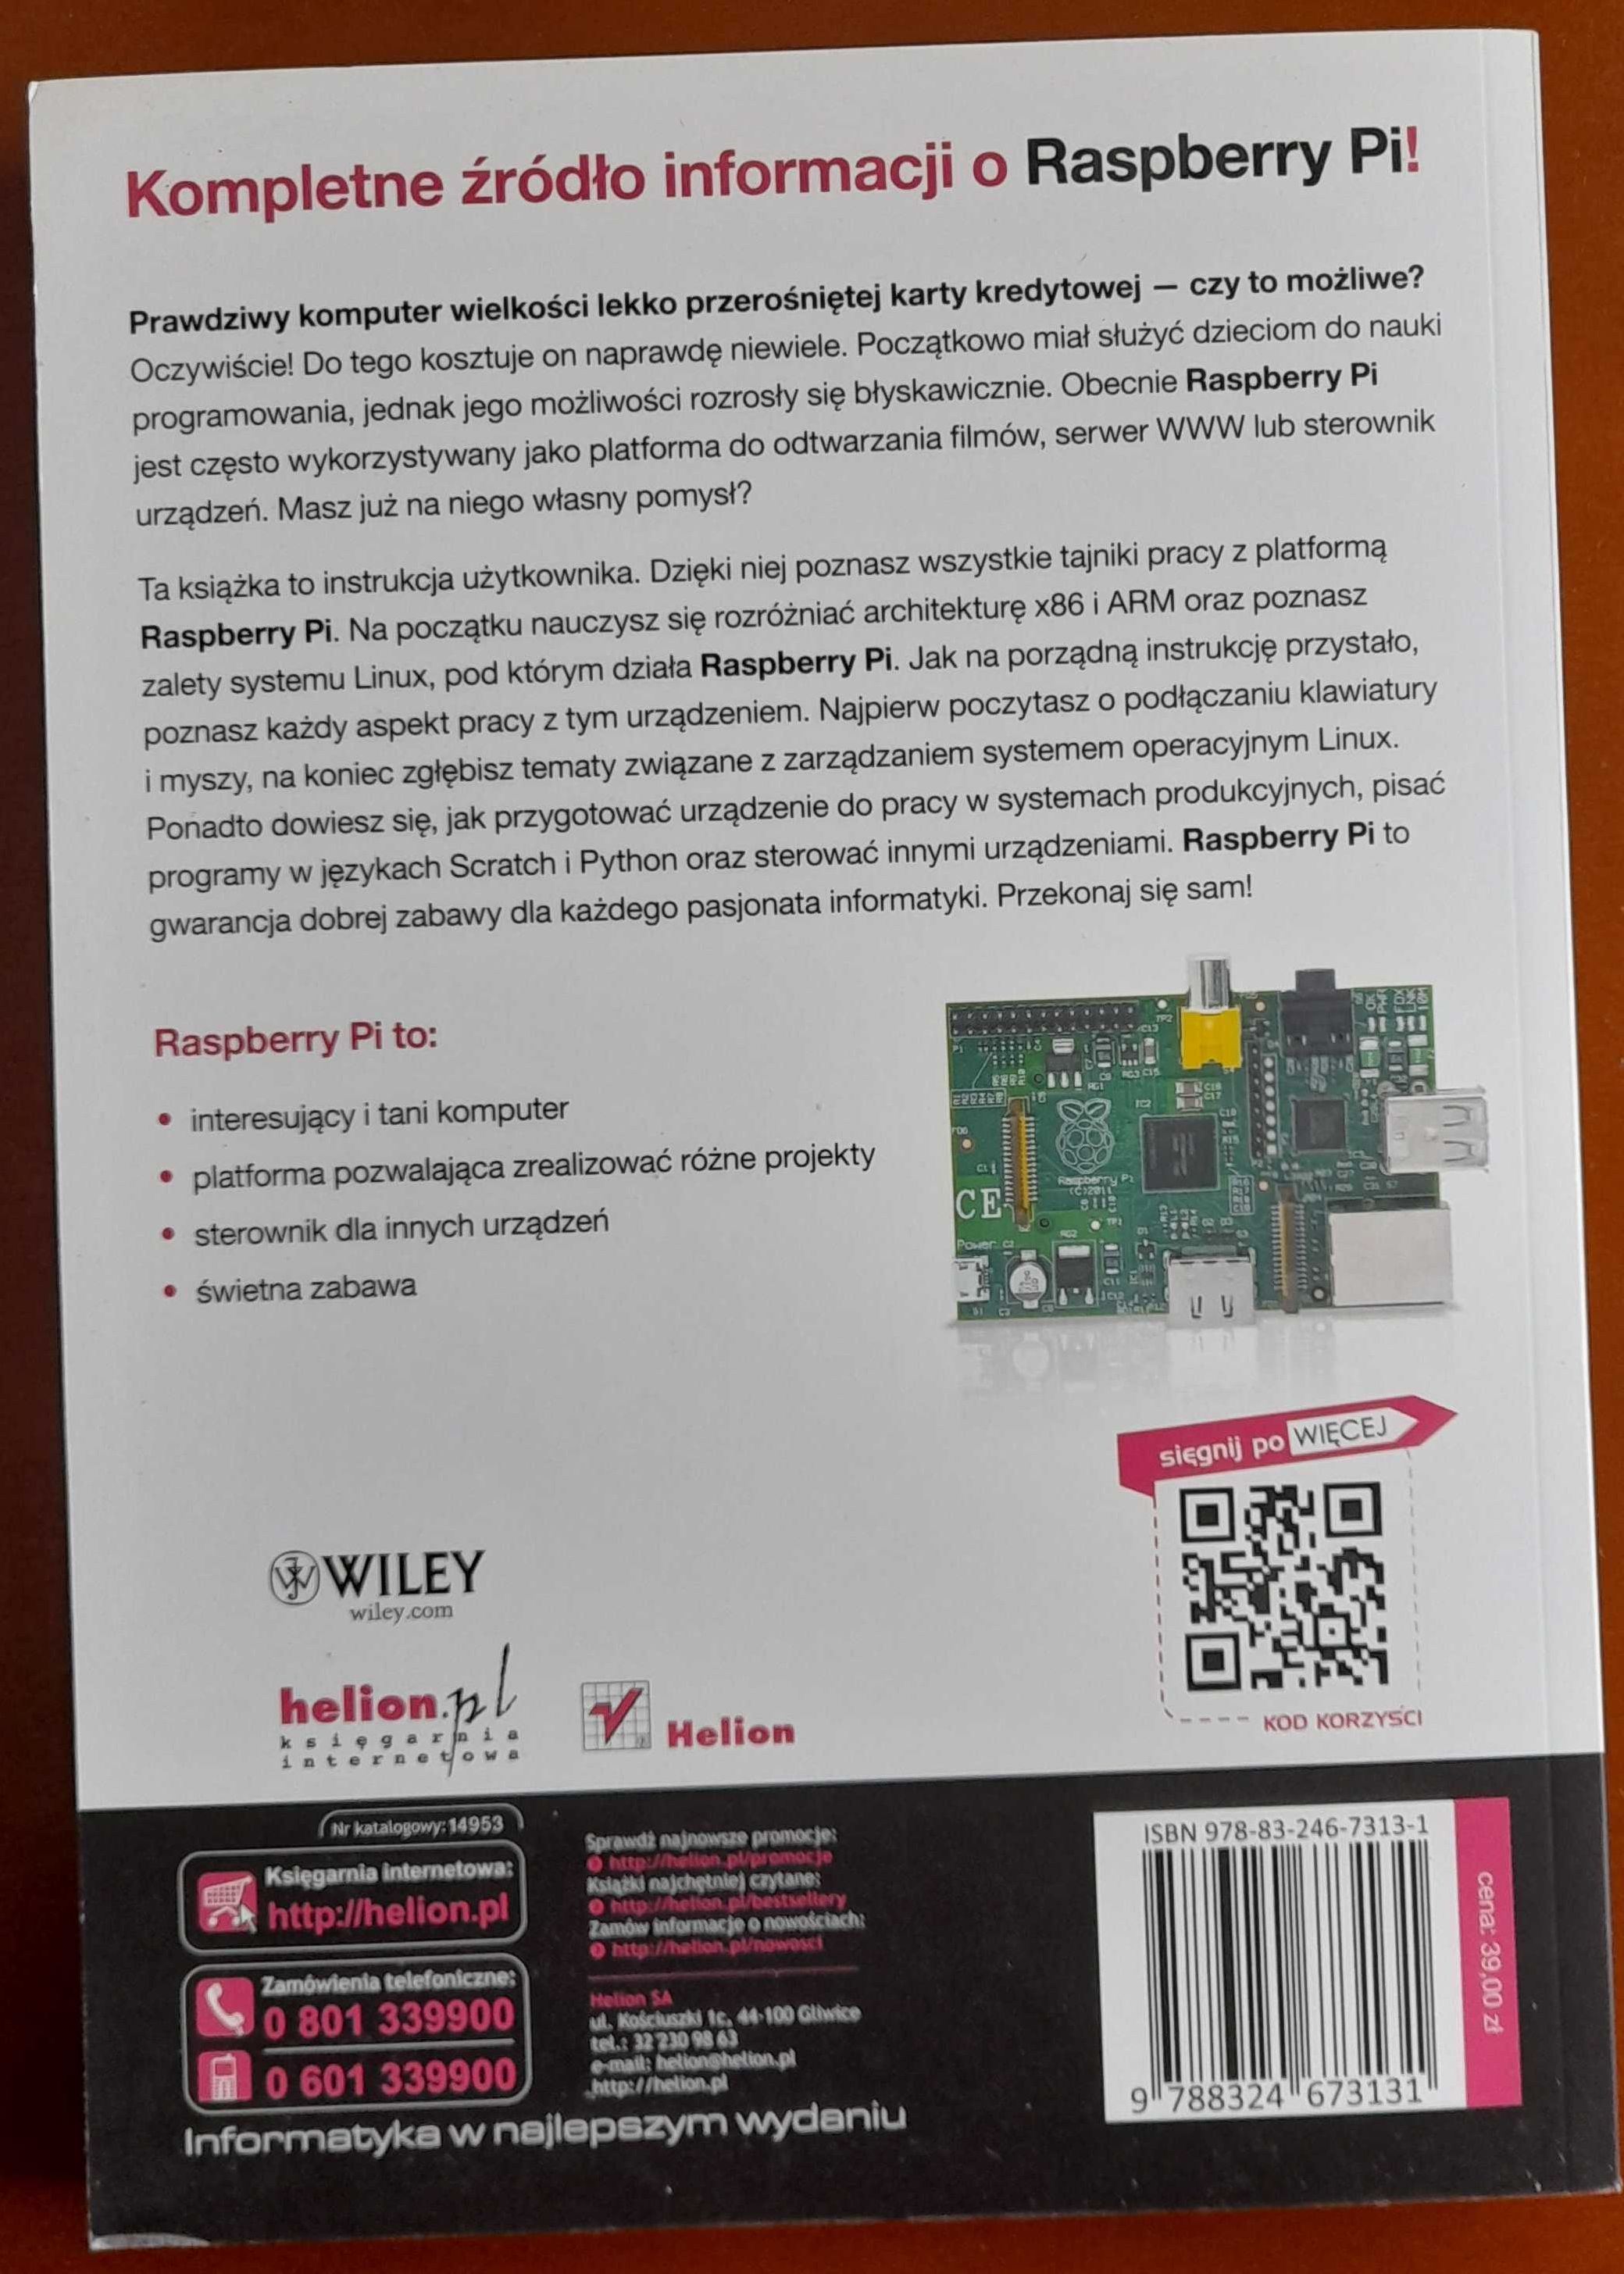 "Raspberry Pi - Przewodnik użytkownika"